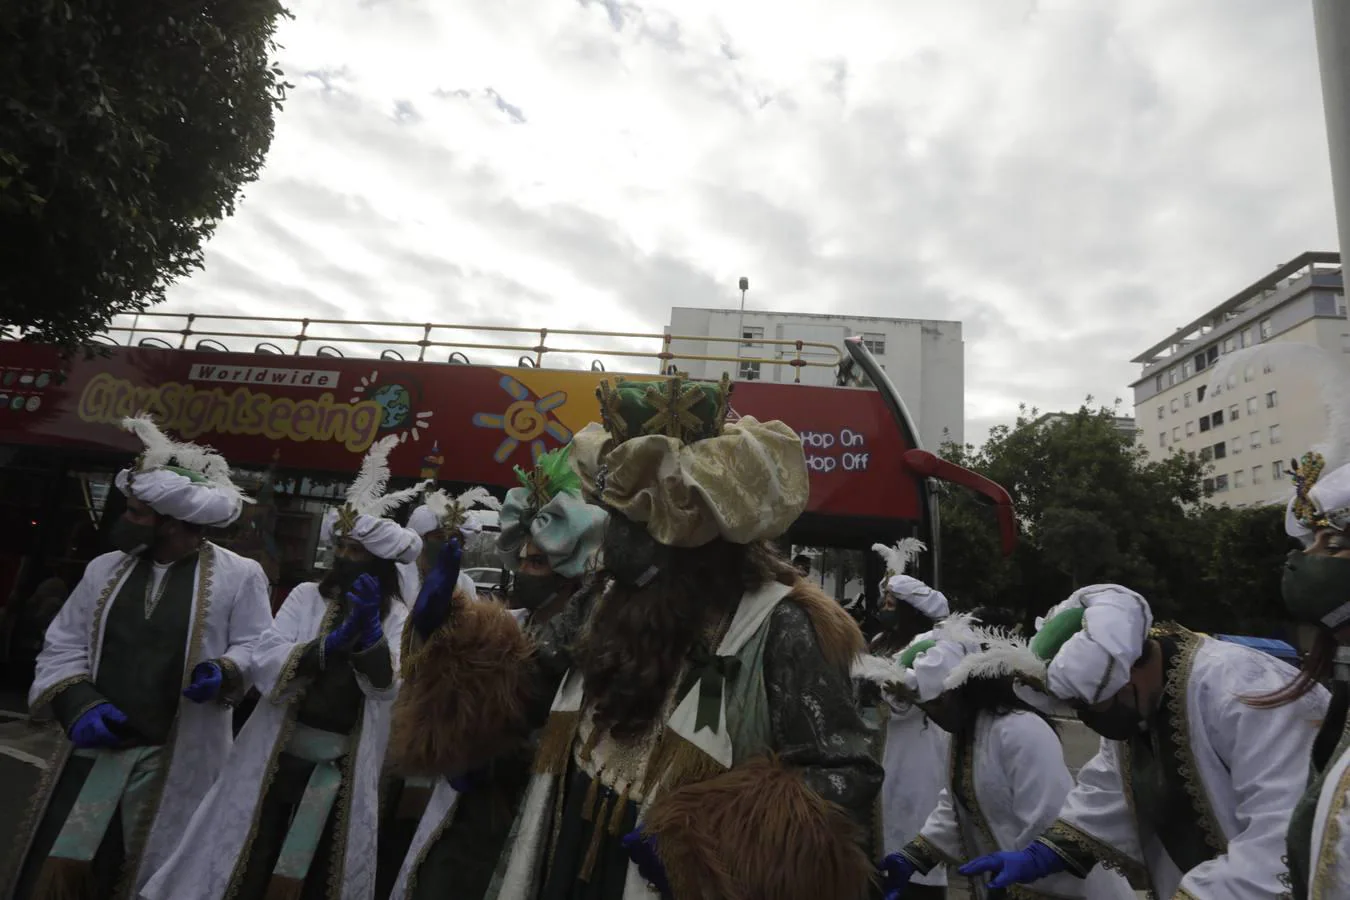 Día de Reyes en Cádiz: Ilusión desbordada de los niños en el día más mágico del año